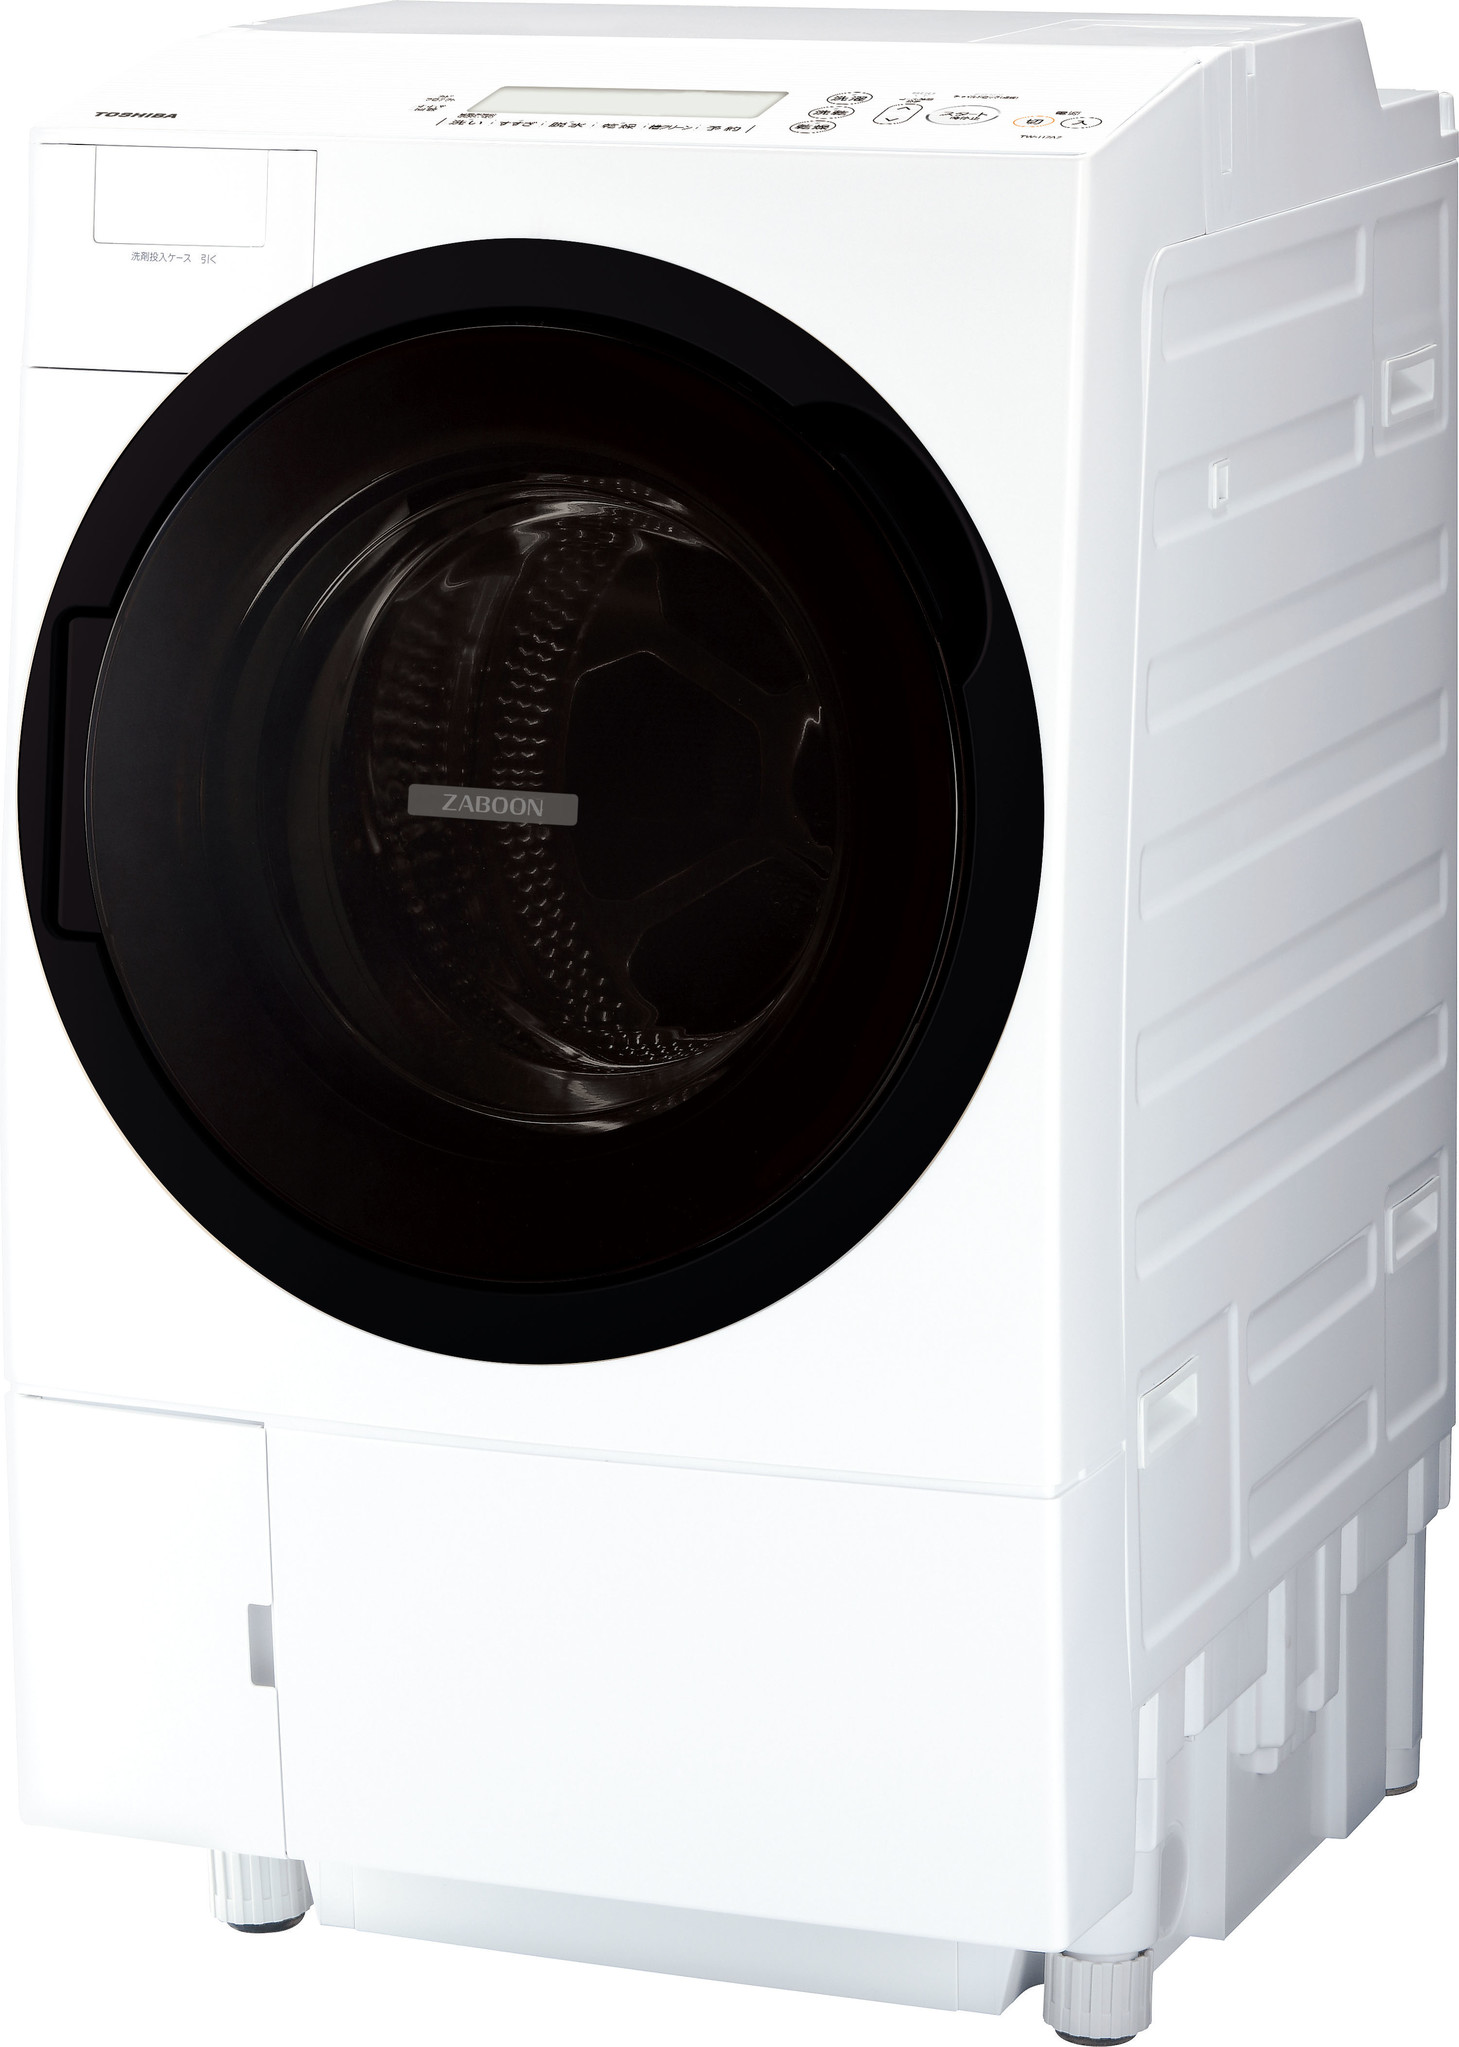 SALE／72%OFF】 320 東芝 洗濯機 ドラム式 乾燥付き 容量8kg 9kg以下